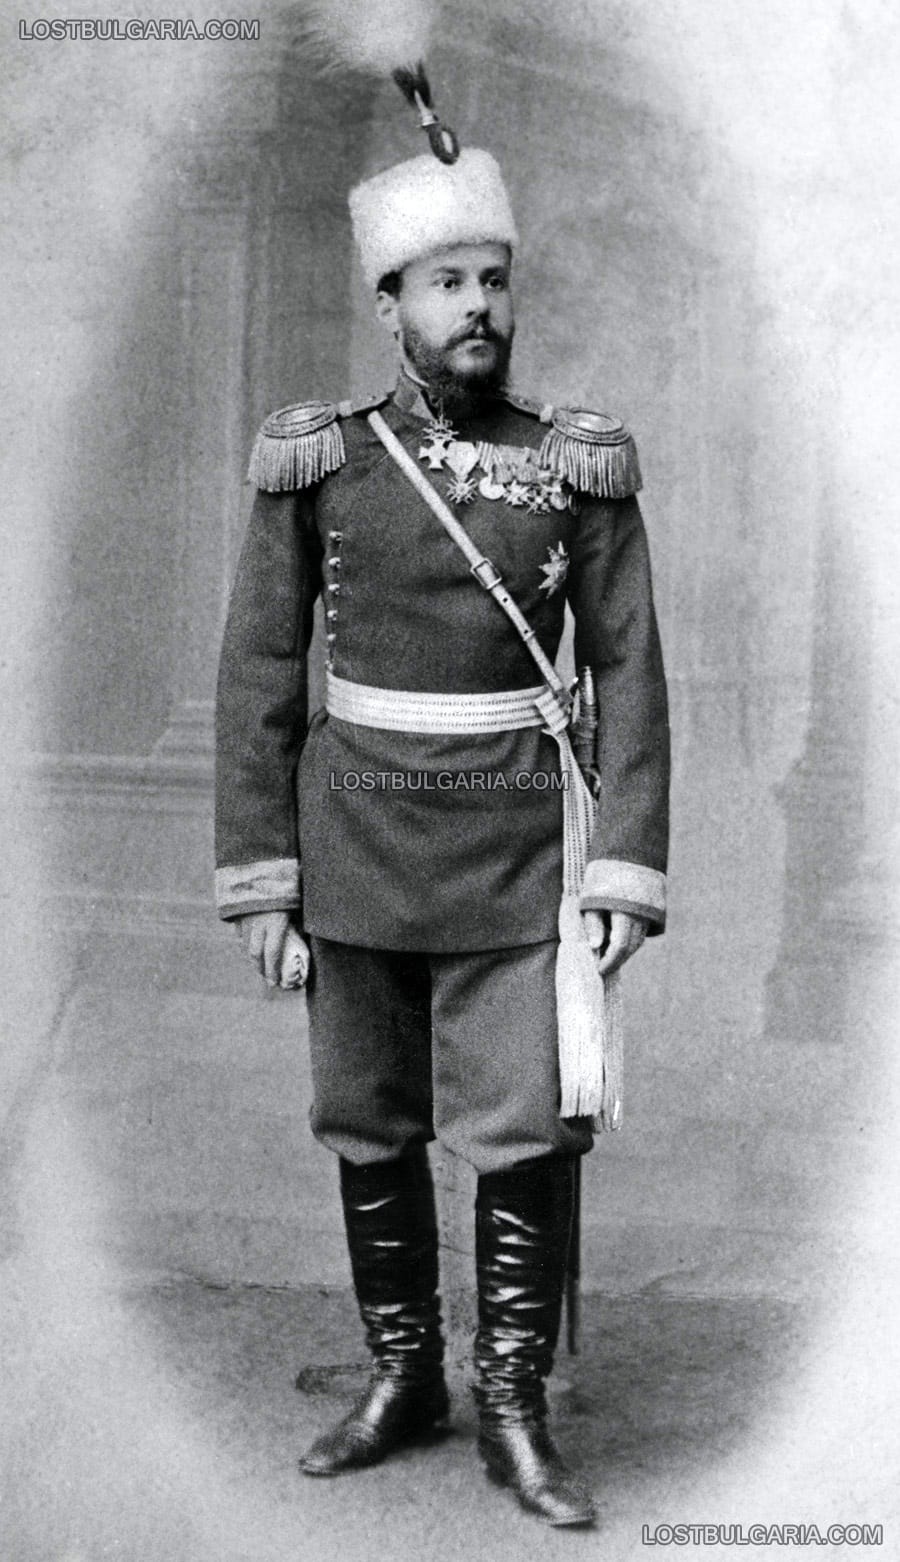 Сава Муткуров (1852-1891), първият български генерал, първият кавалер на орден "За храброст", регент в Княжество България, военен министър в правителството на Стефан Стамболов, участник в Съединението